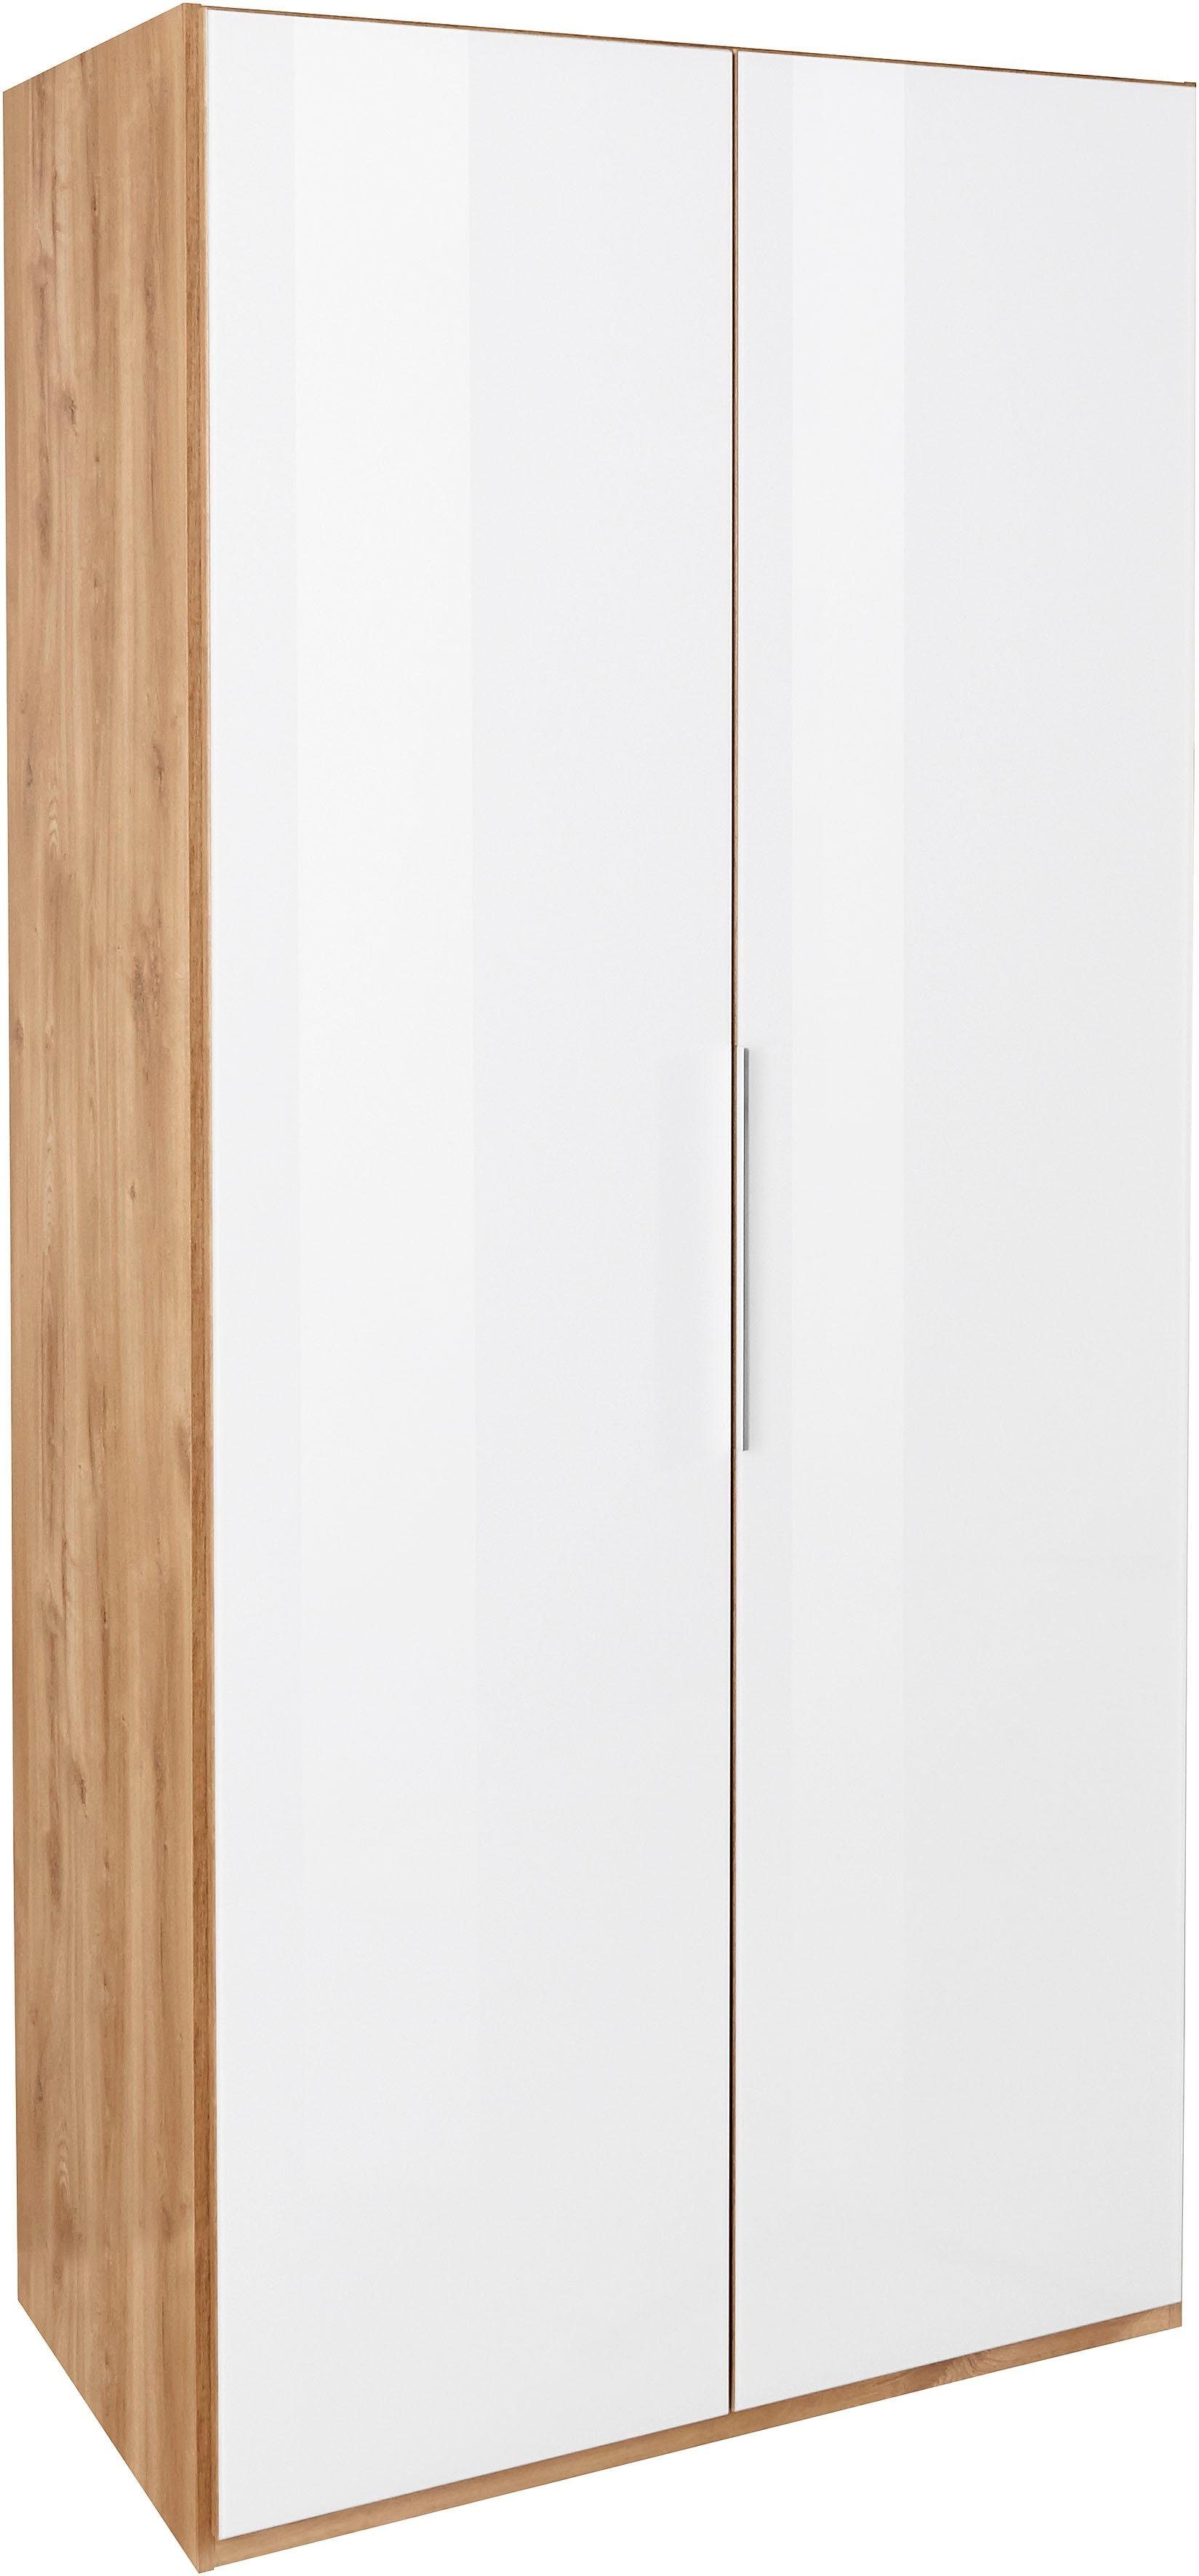 Türen vollflächig mit plankeneichefarben/Weißglas farbigem To Kleiderschrank Fresh Level Glas Go